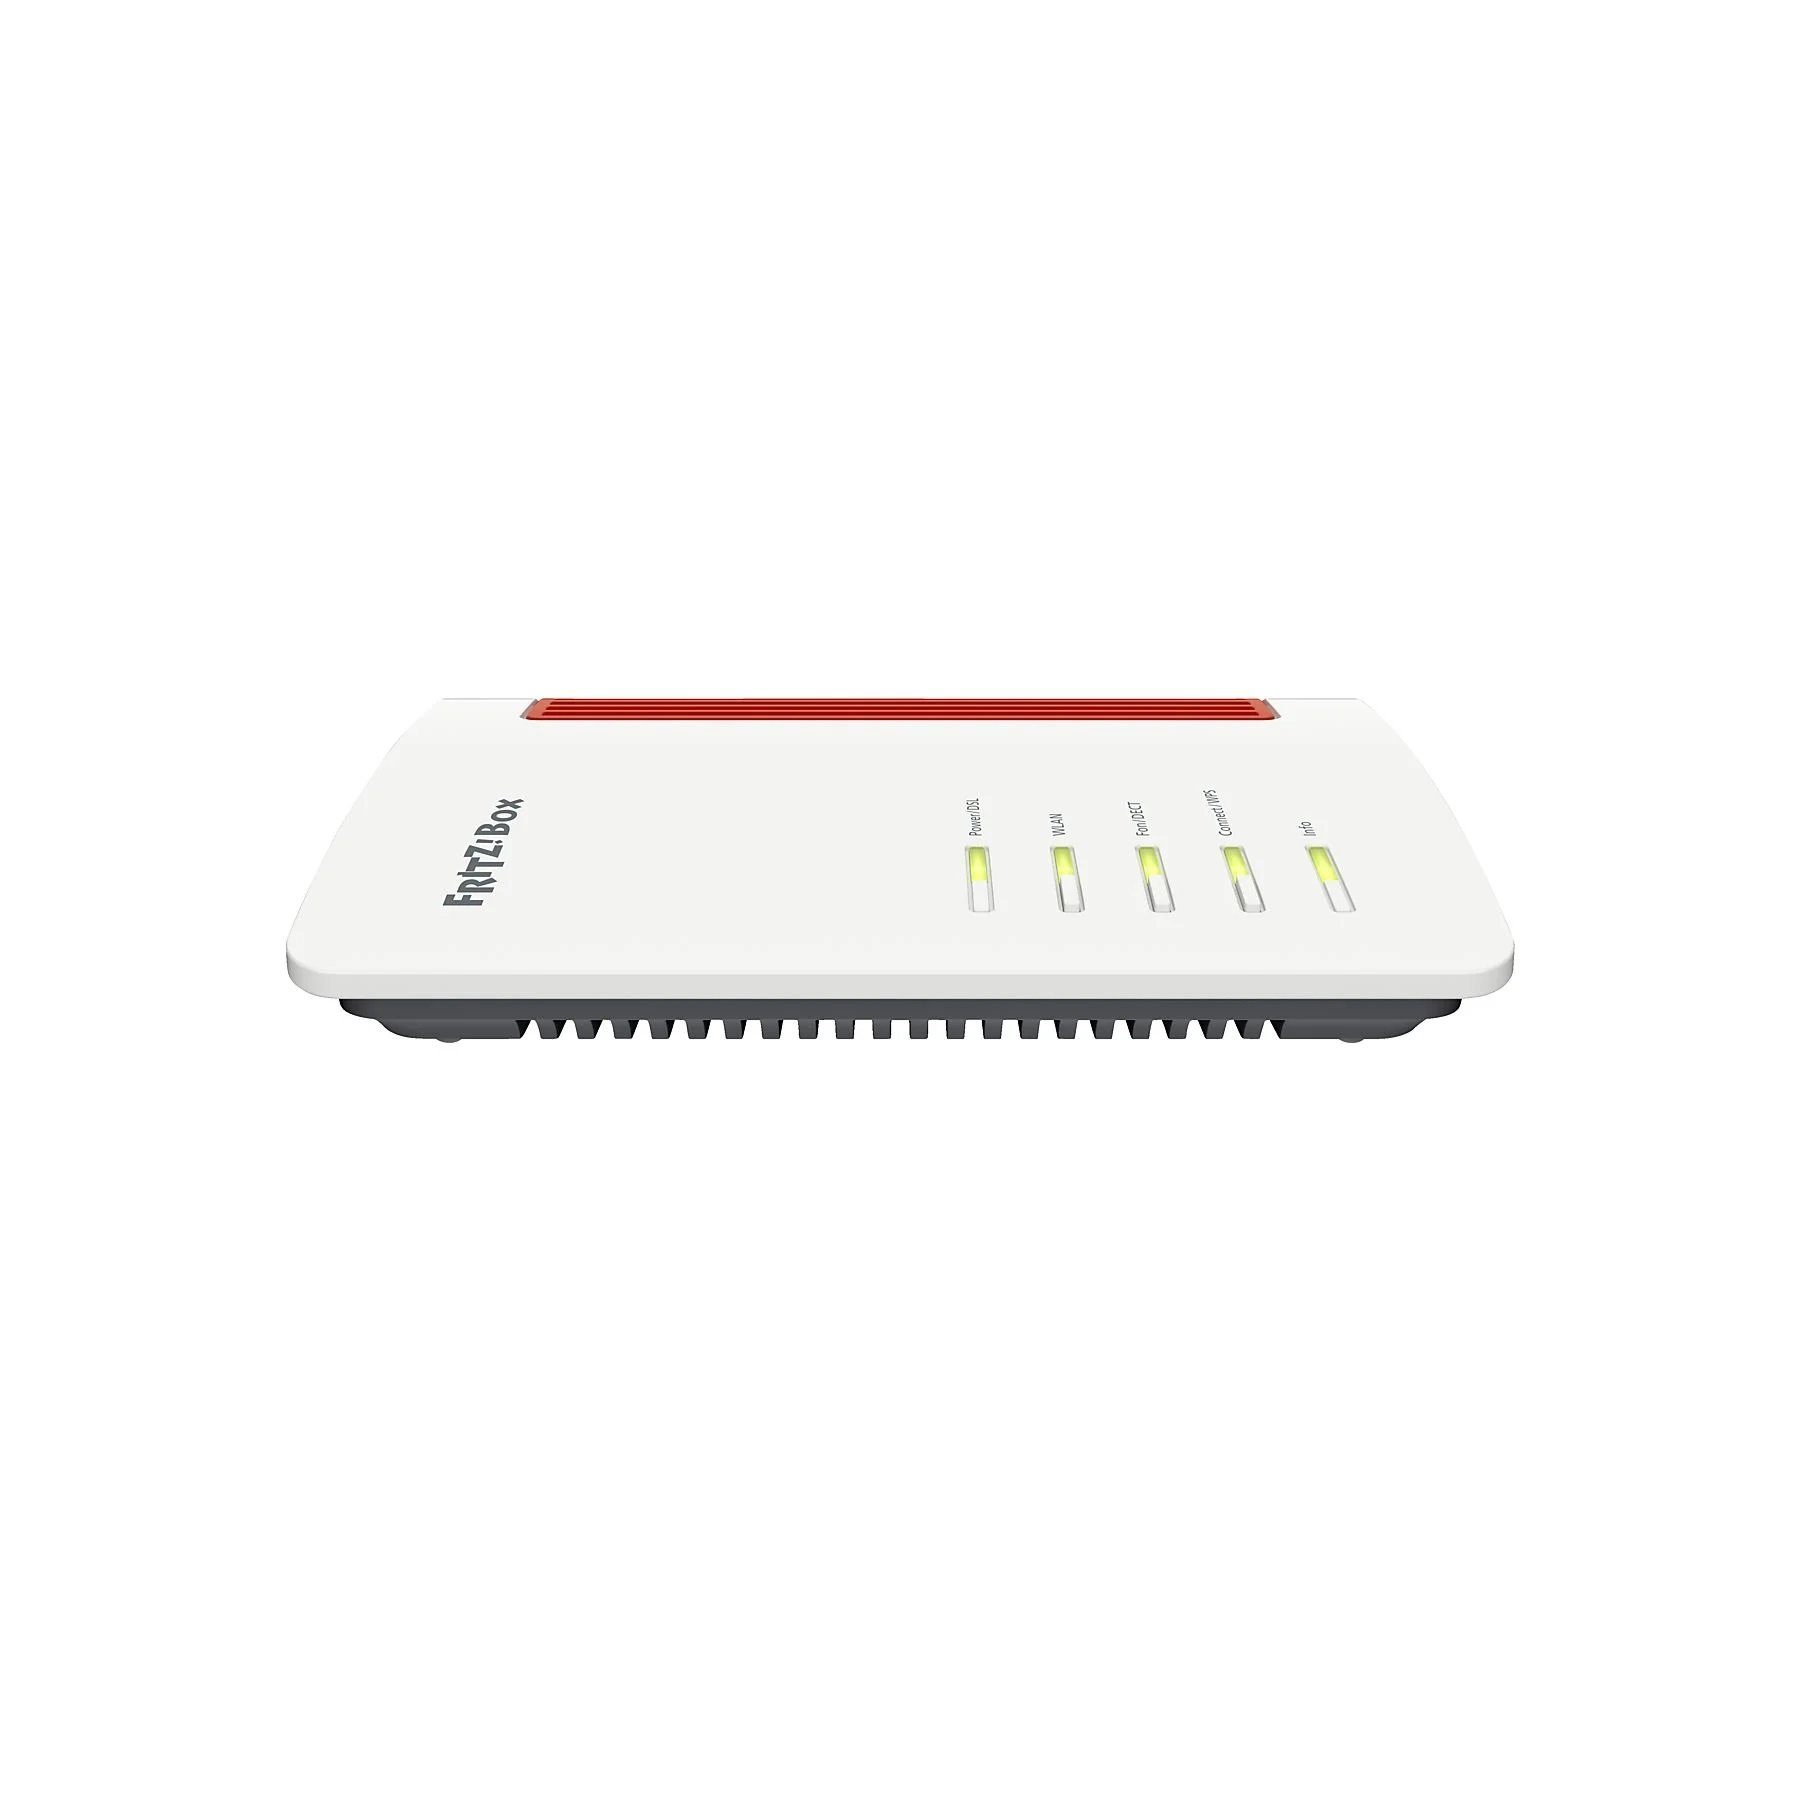 USB3.0 FRITZBox AC, 2,4 ADSL - GHz AVM GHz ADSL2, 7530 VDSL2 5 WIFI, NAS, VDSL Gigabit, WLAN-Router, /